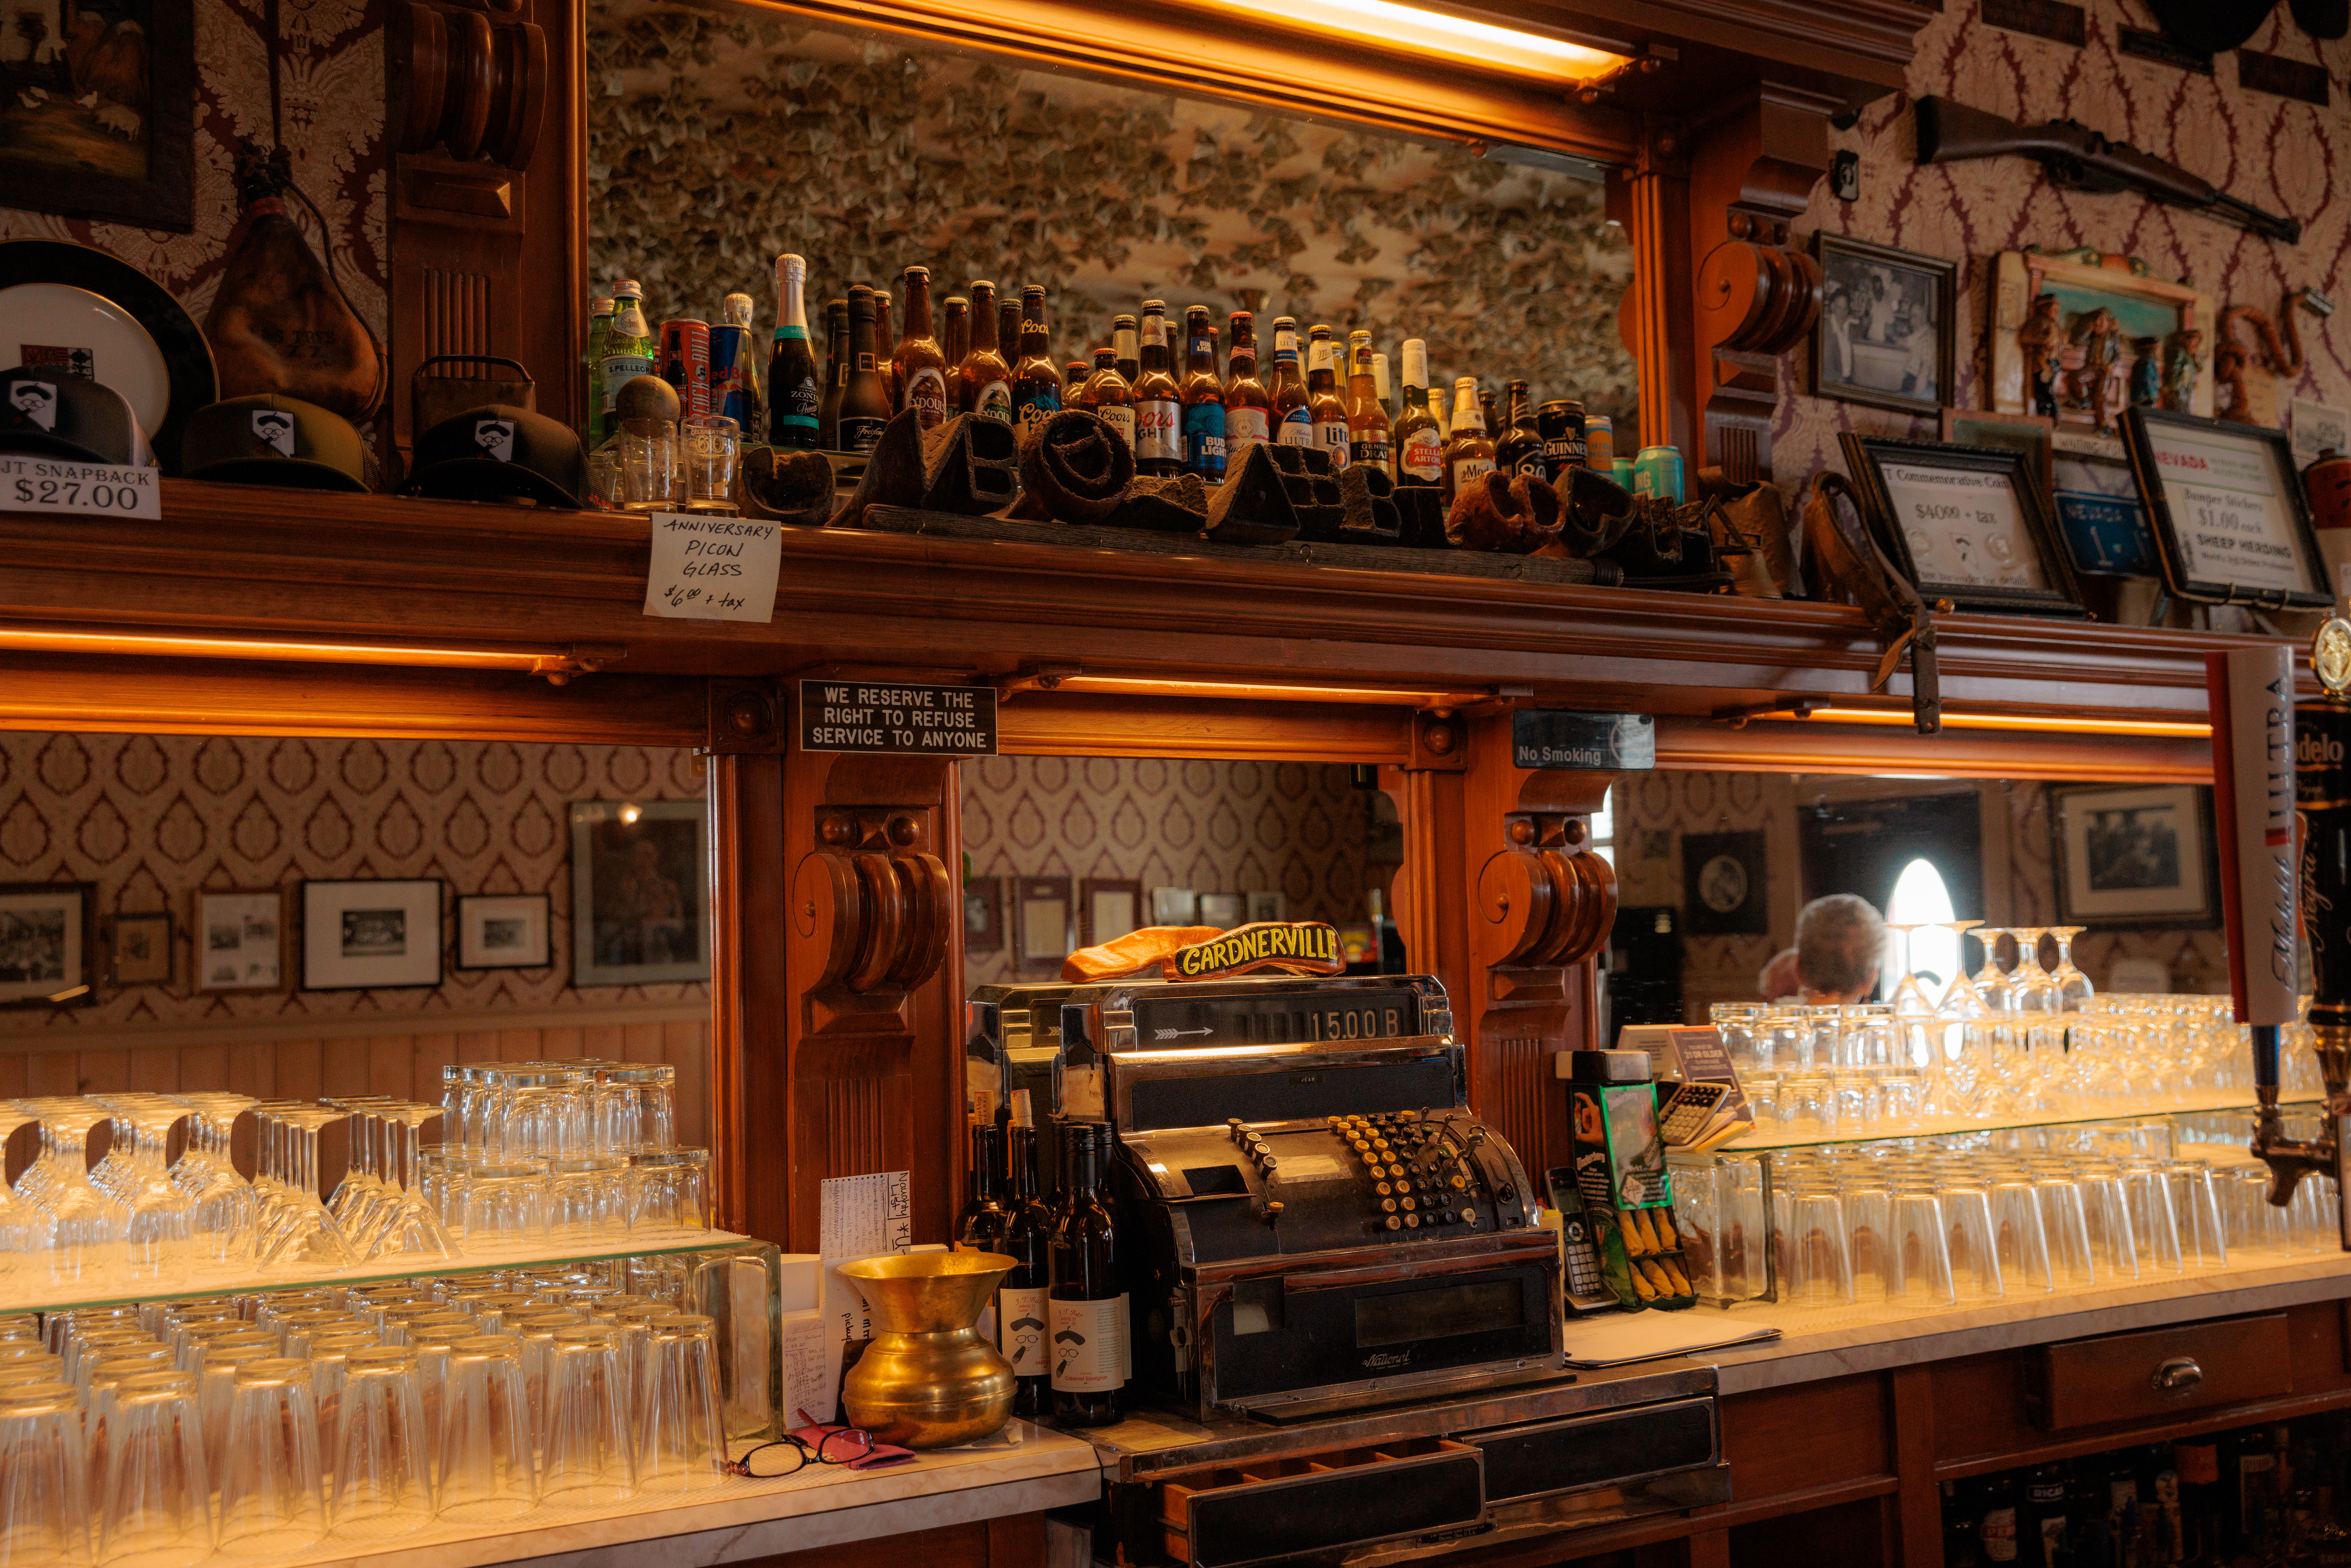 JT Basque Bar & Dining Room